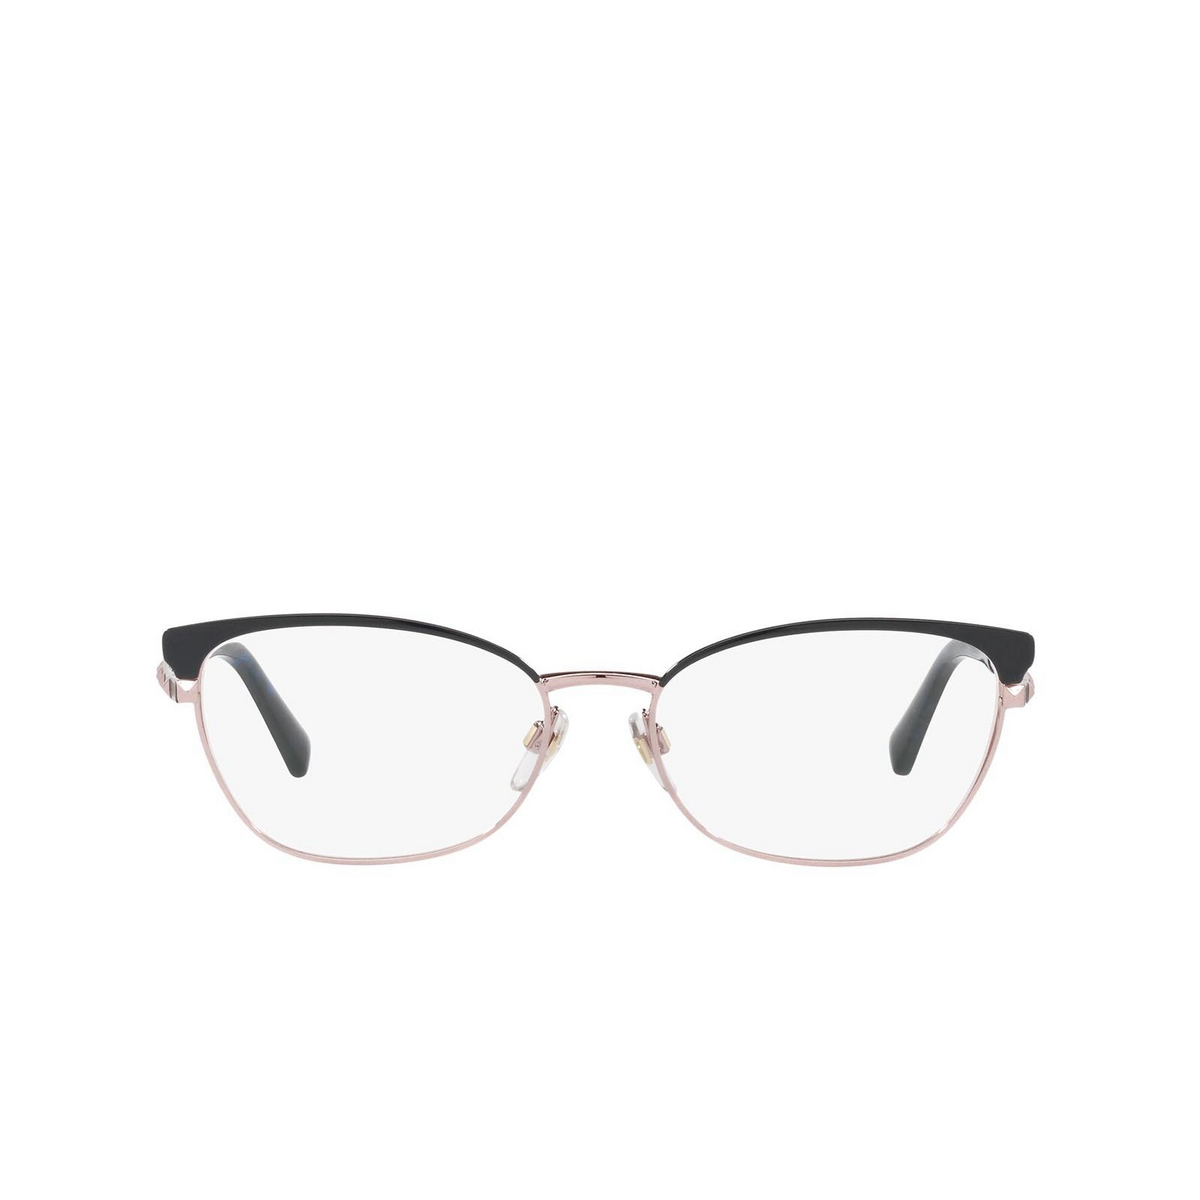 Valentino® Cat-eye Sunglasses: VA1022 color Copper/blue 3004 - front view.